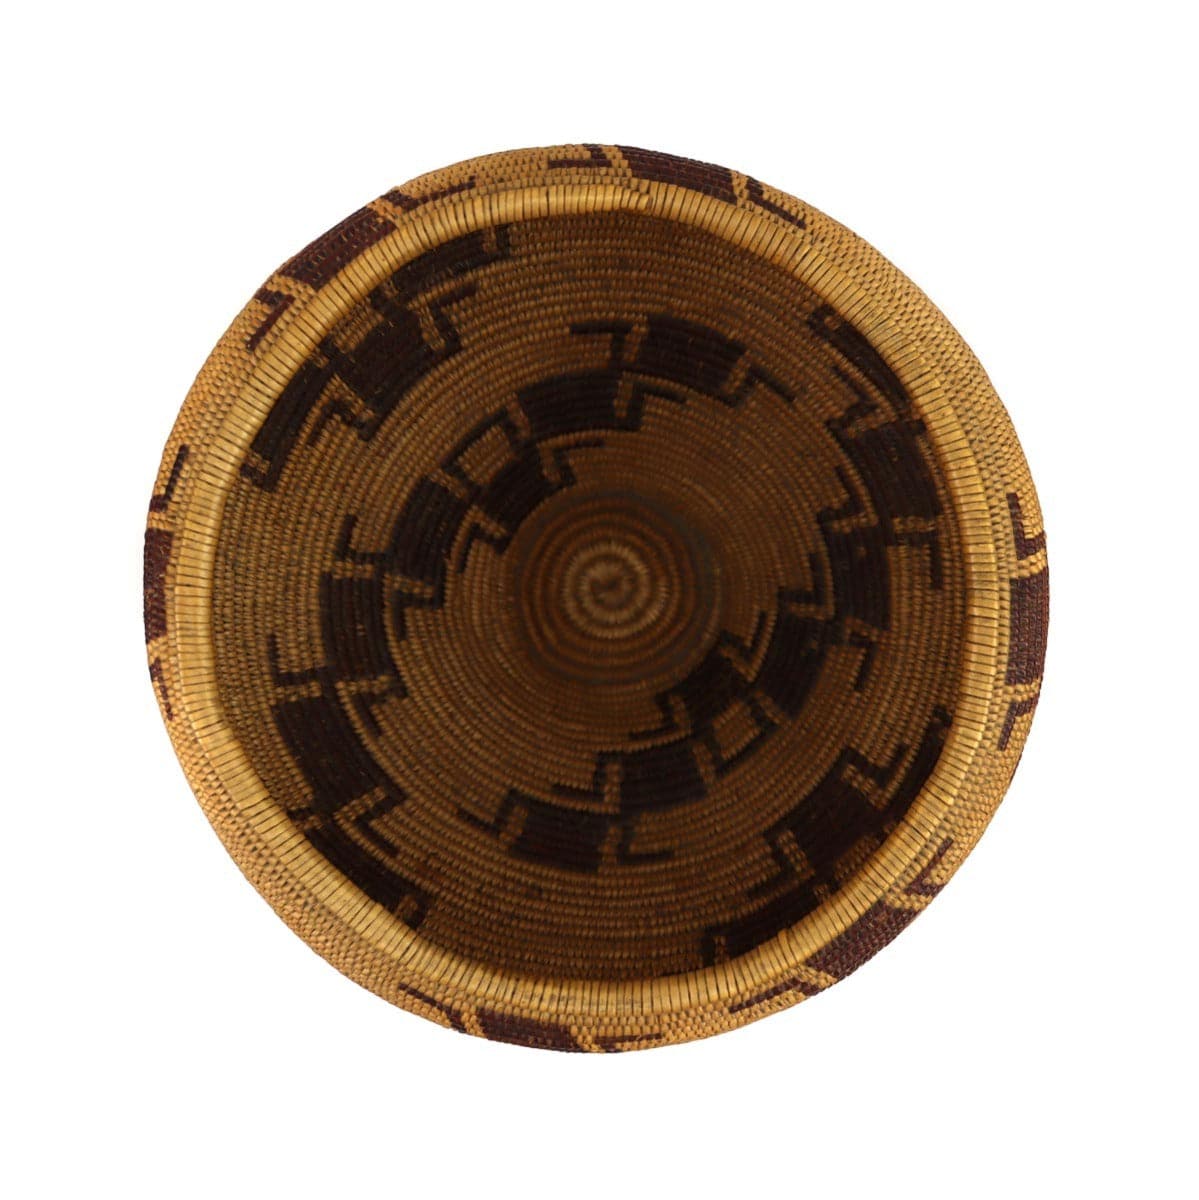 Maidu Polychrome Basket c. 1900s, 6.5" x 7" (SK3230-093)3
